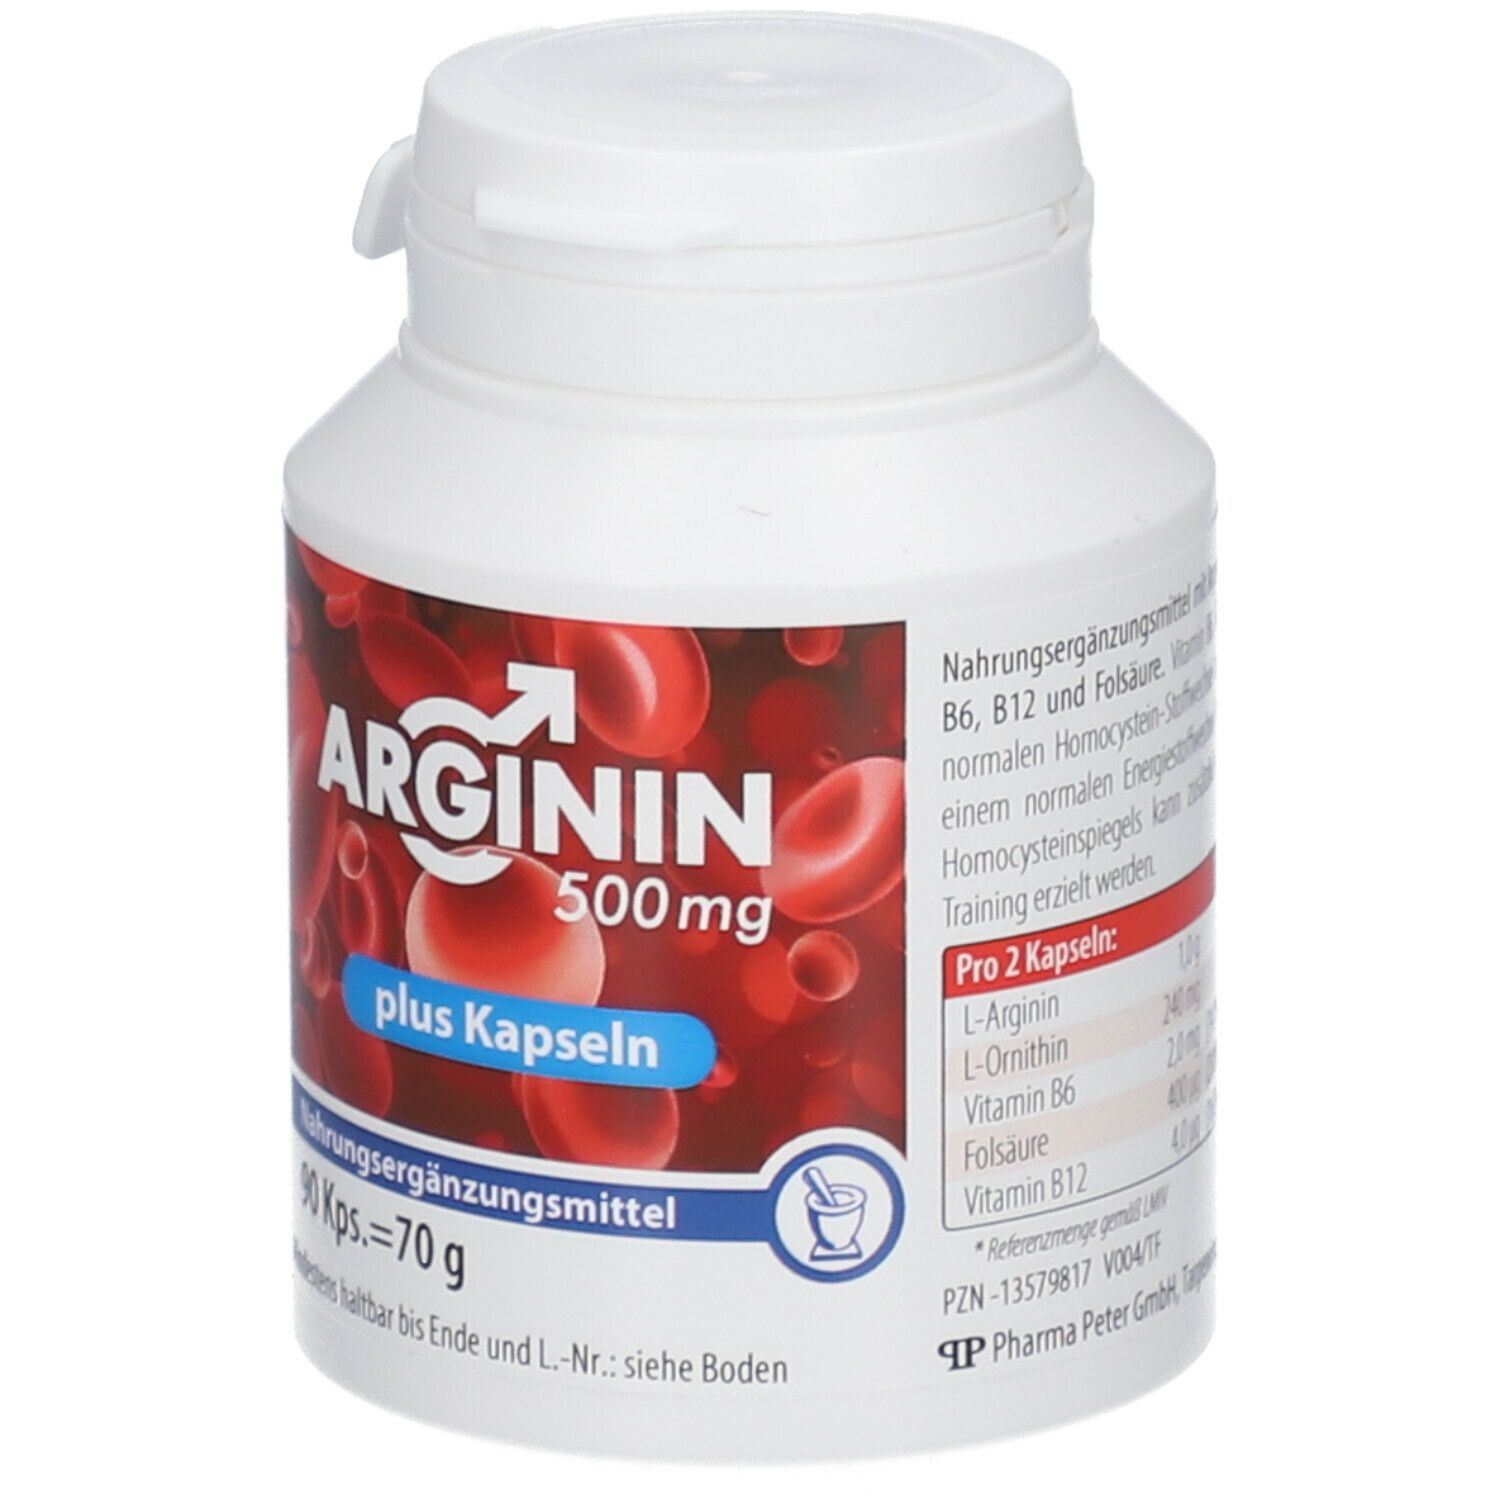 Arginin 500 mg plus Kapseln